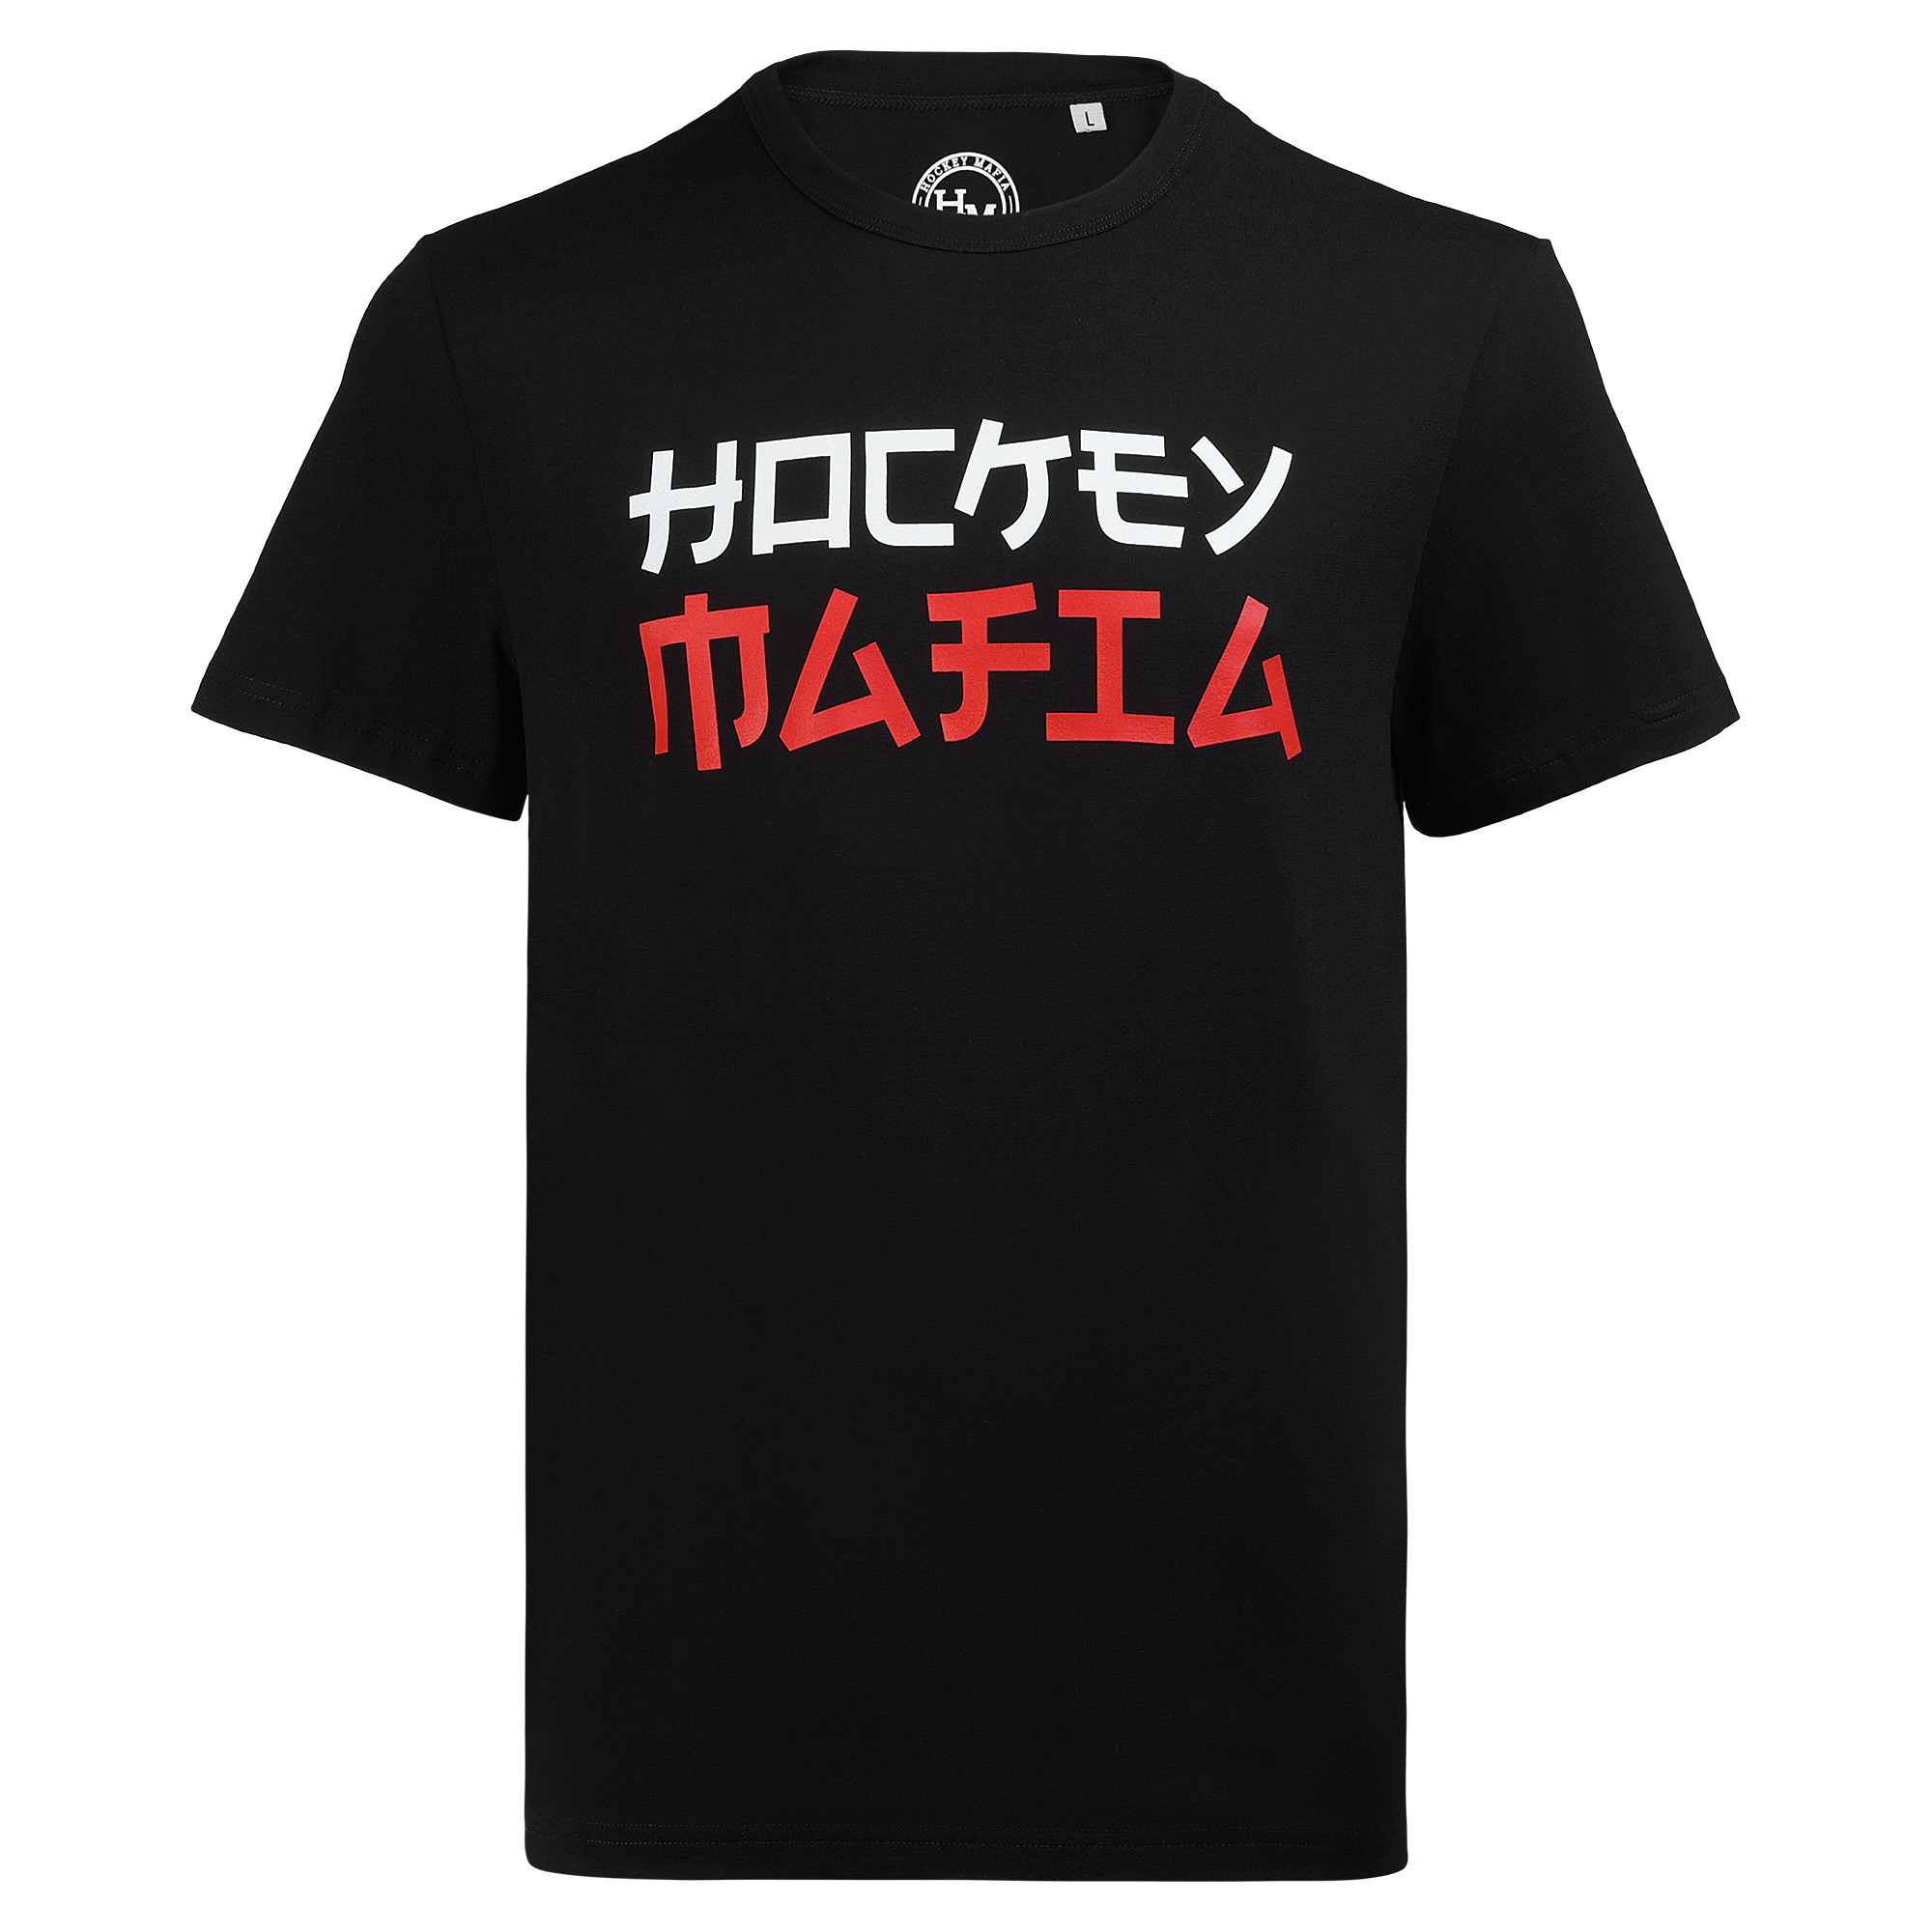 Футболка мужская "Hockey Mafia" черная